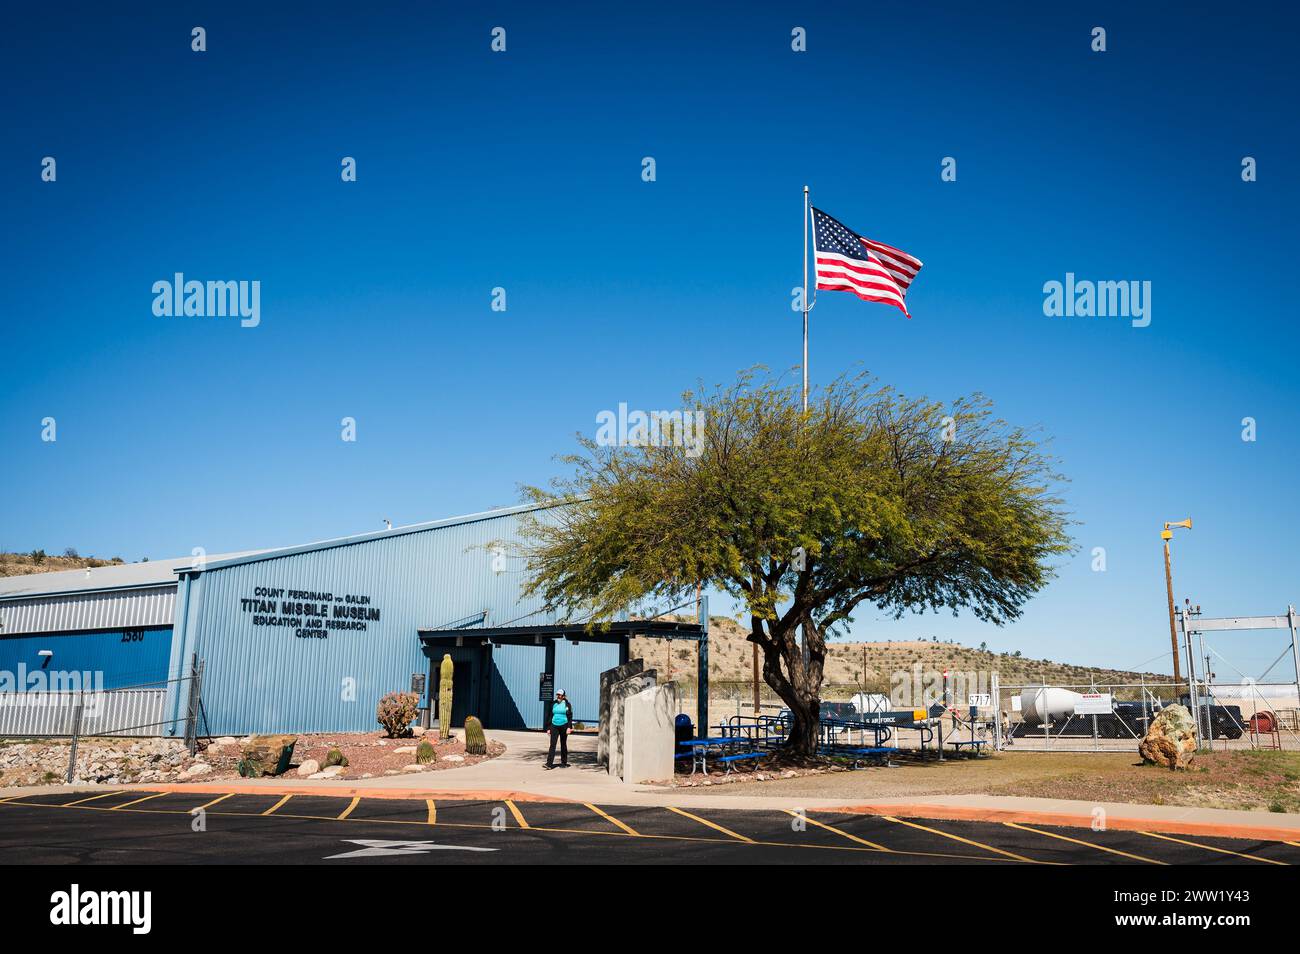 Le Titan missile Museum, qui abrite un missile nucléaire ICBM Titan II de déclassement. Sud de Tucson Arizona, États-Unis. Banque D'Images